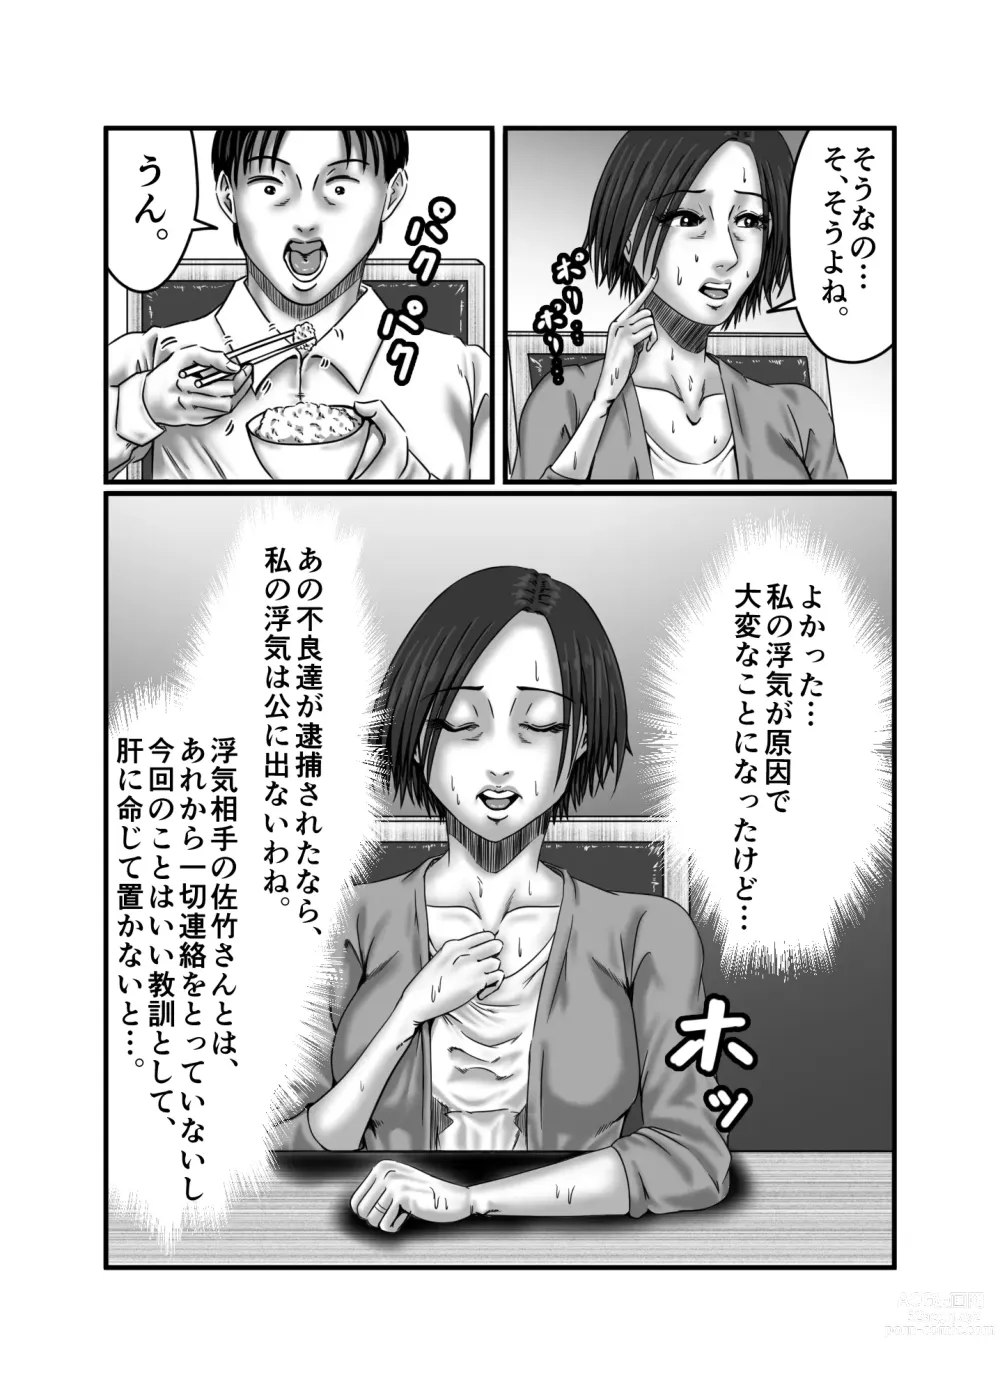 Page 102 of doujinshi Classmate no Hahaoya wo Seikangu ni Shite Moteasobu